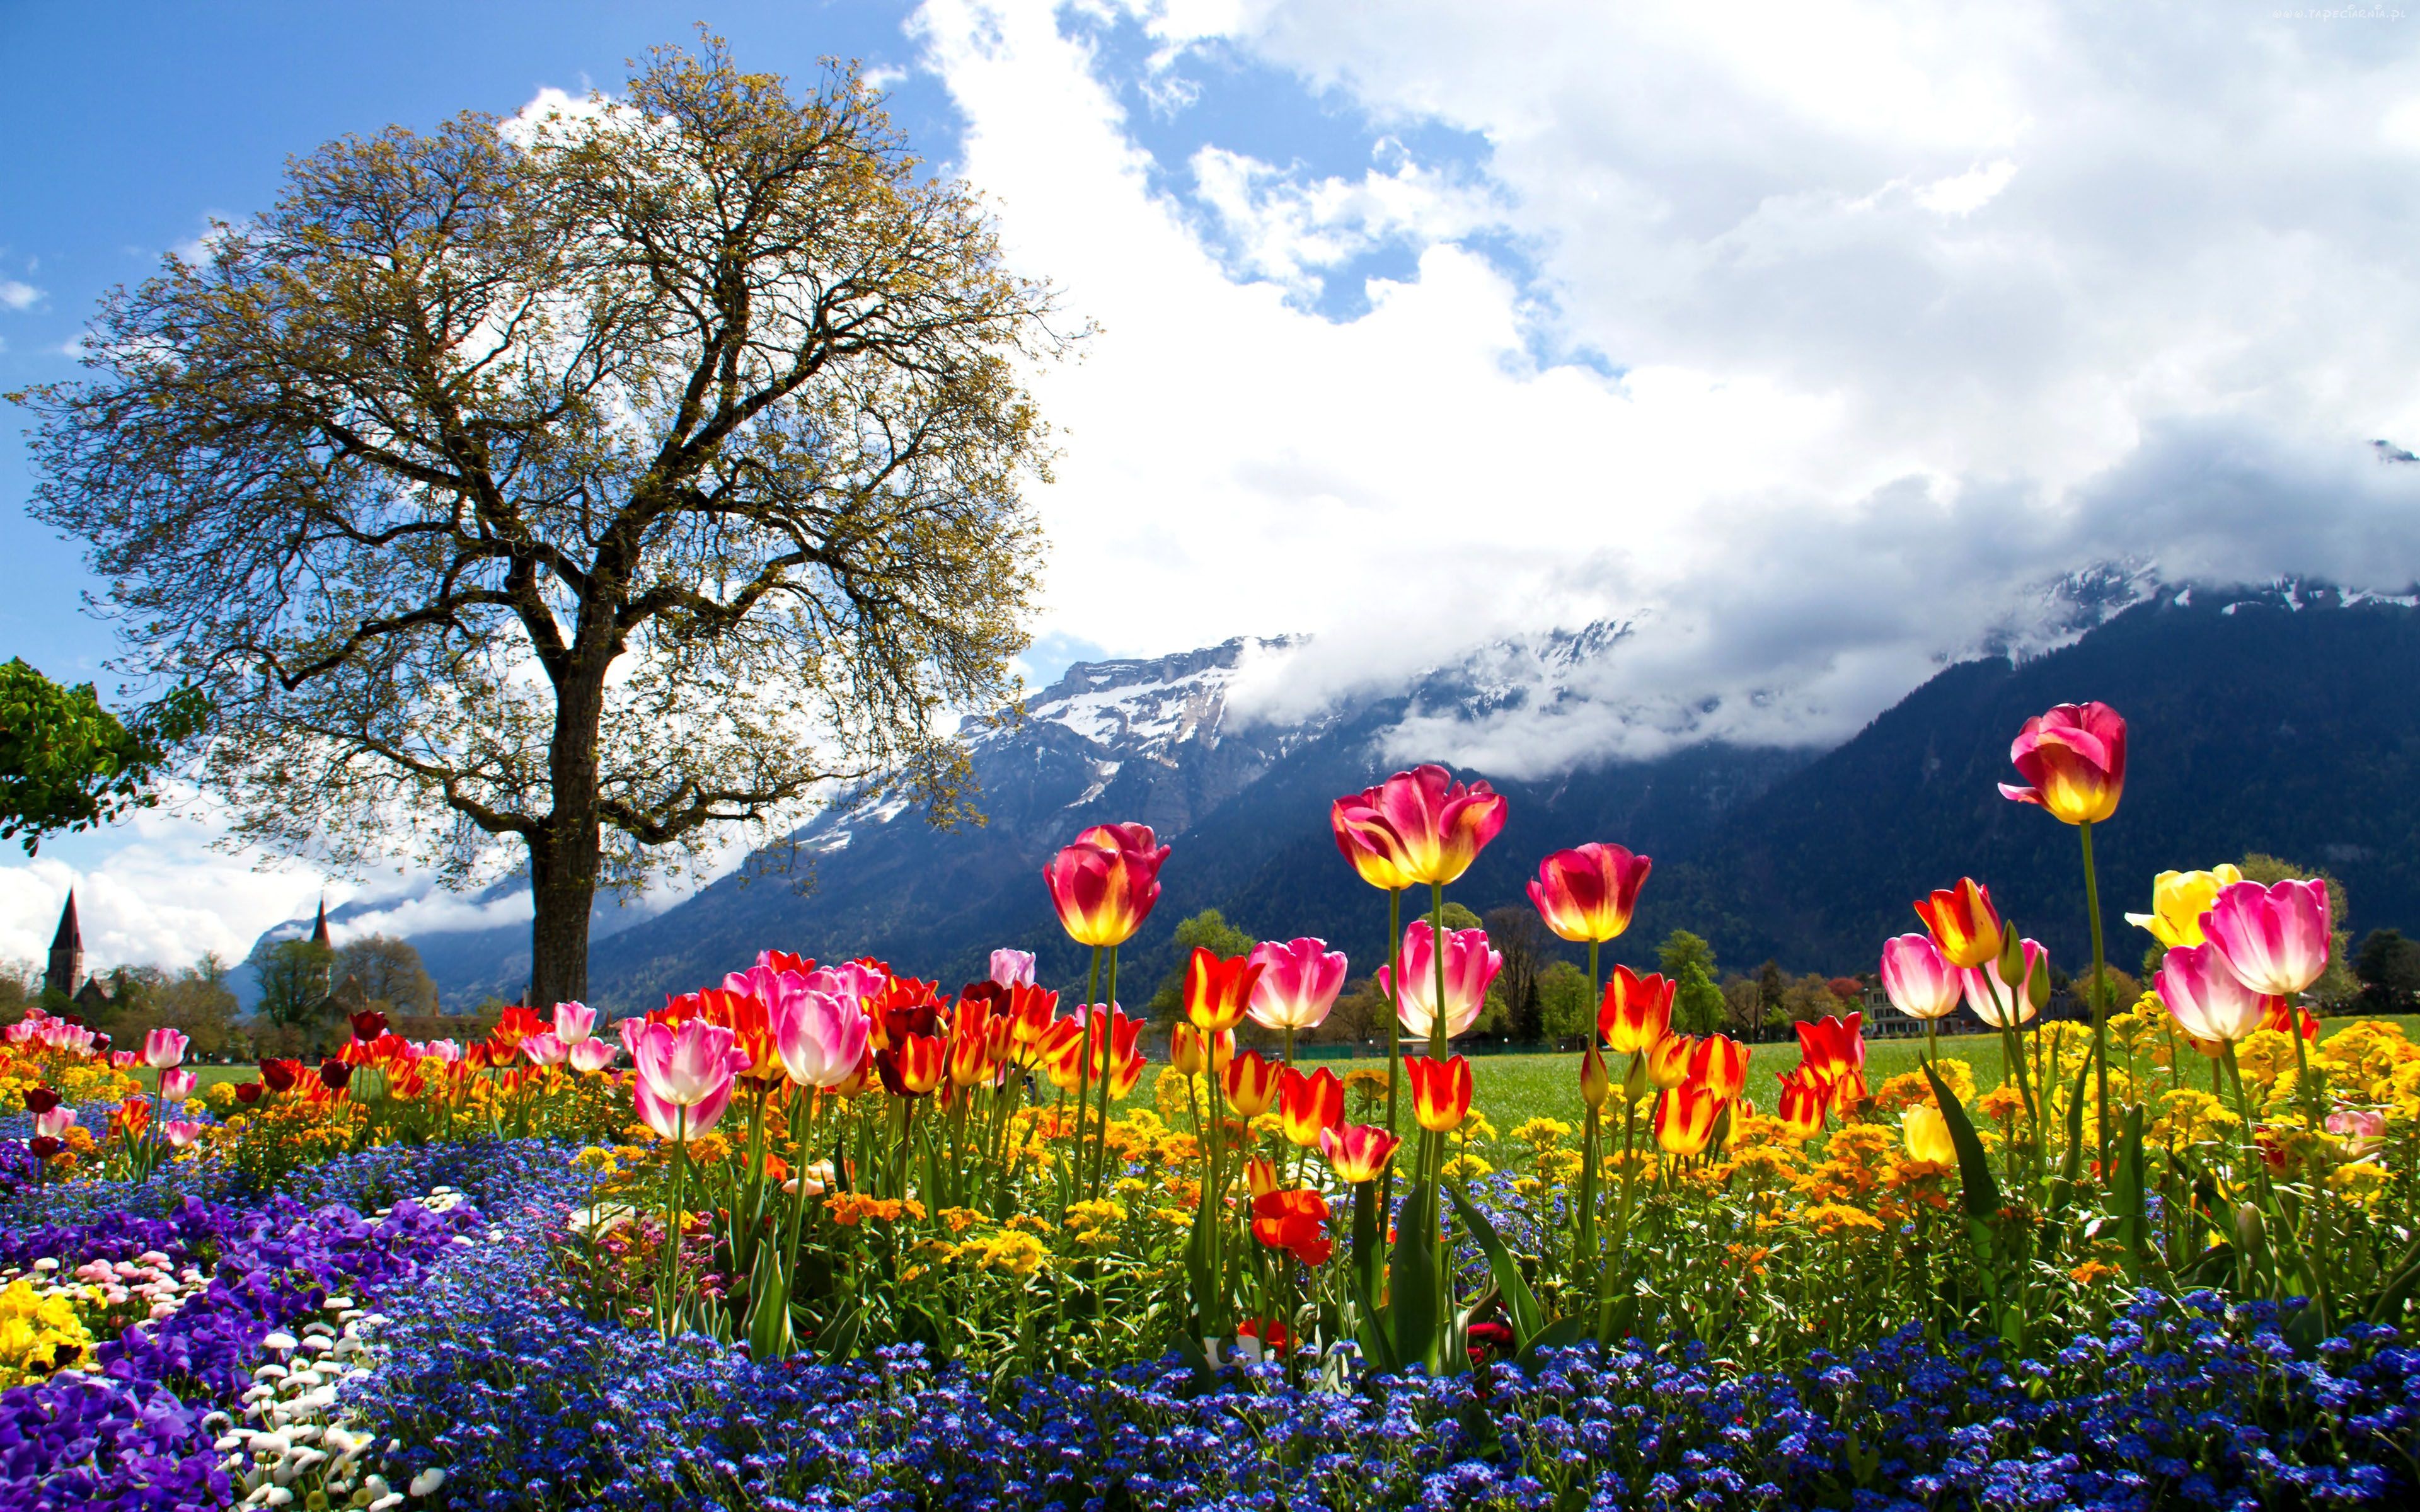 عکس طبیعت رنگین و گل های متنوع و درخت سرسبز برای استوری